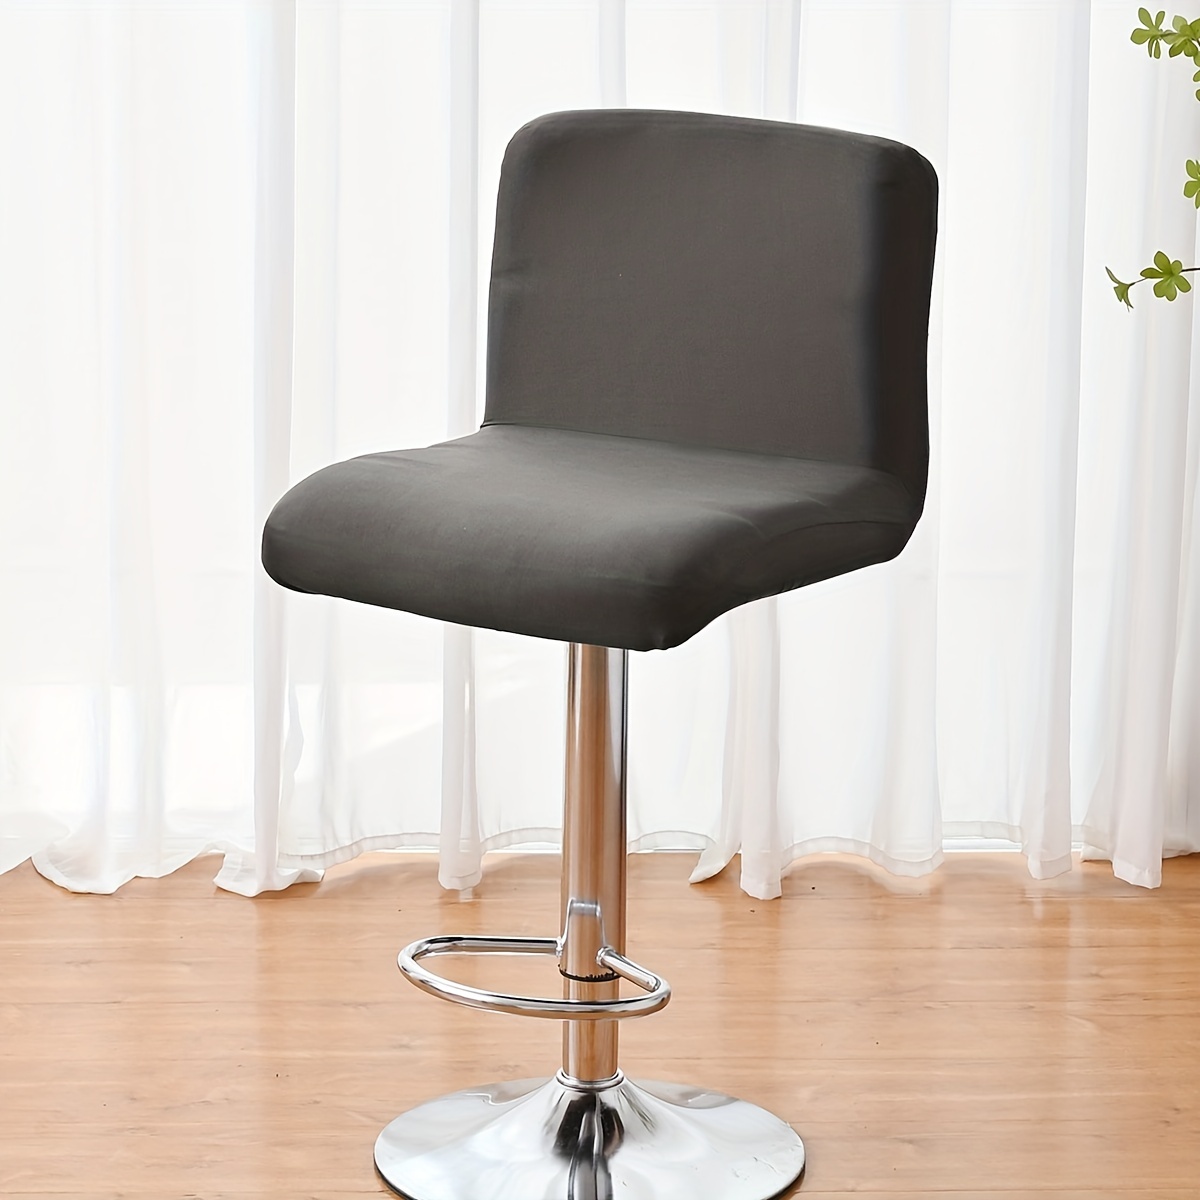  Silla de tocador para sala de estar, silla de maquillaje, silla  giratoria con respaldo redondo, altura ajustable, de piel sintética, silla  moderna para sala de maquillaje, escritorio pequeño, color : Hogar